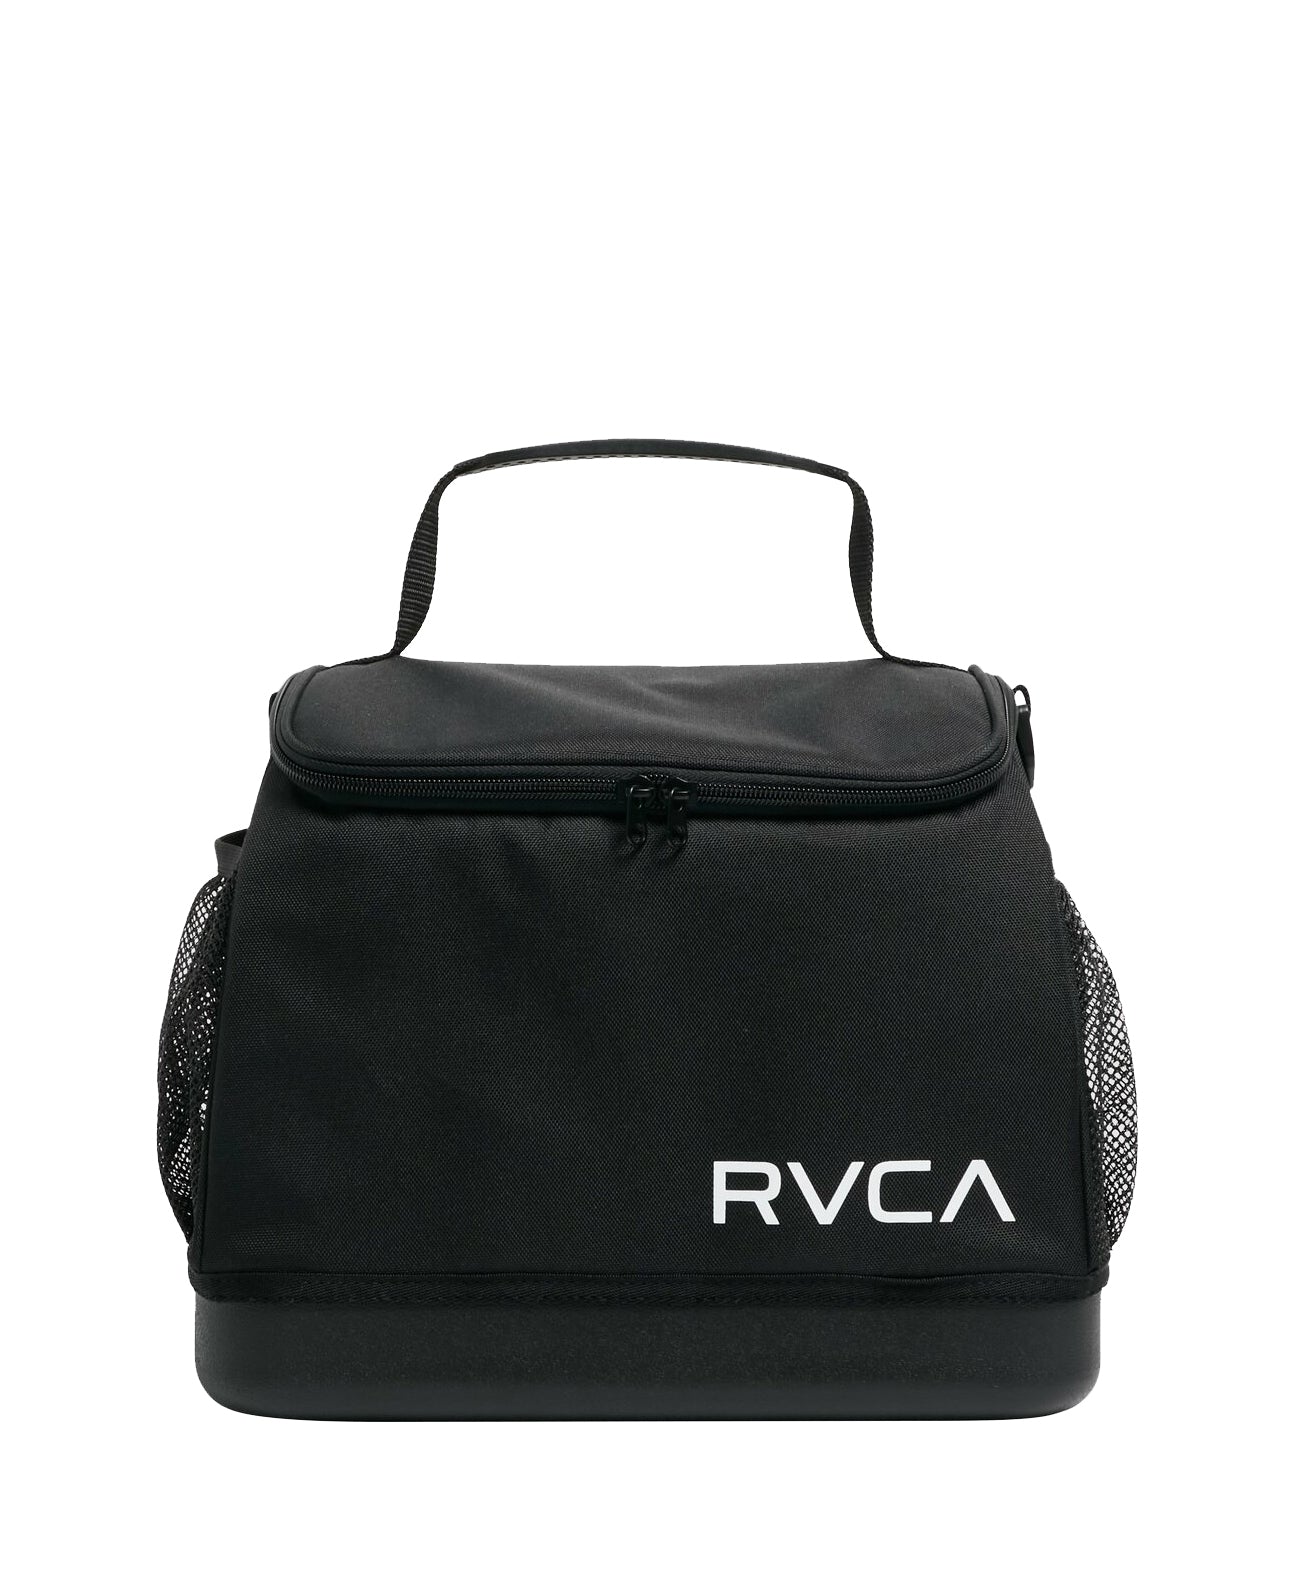 RVCA Cooler Bag